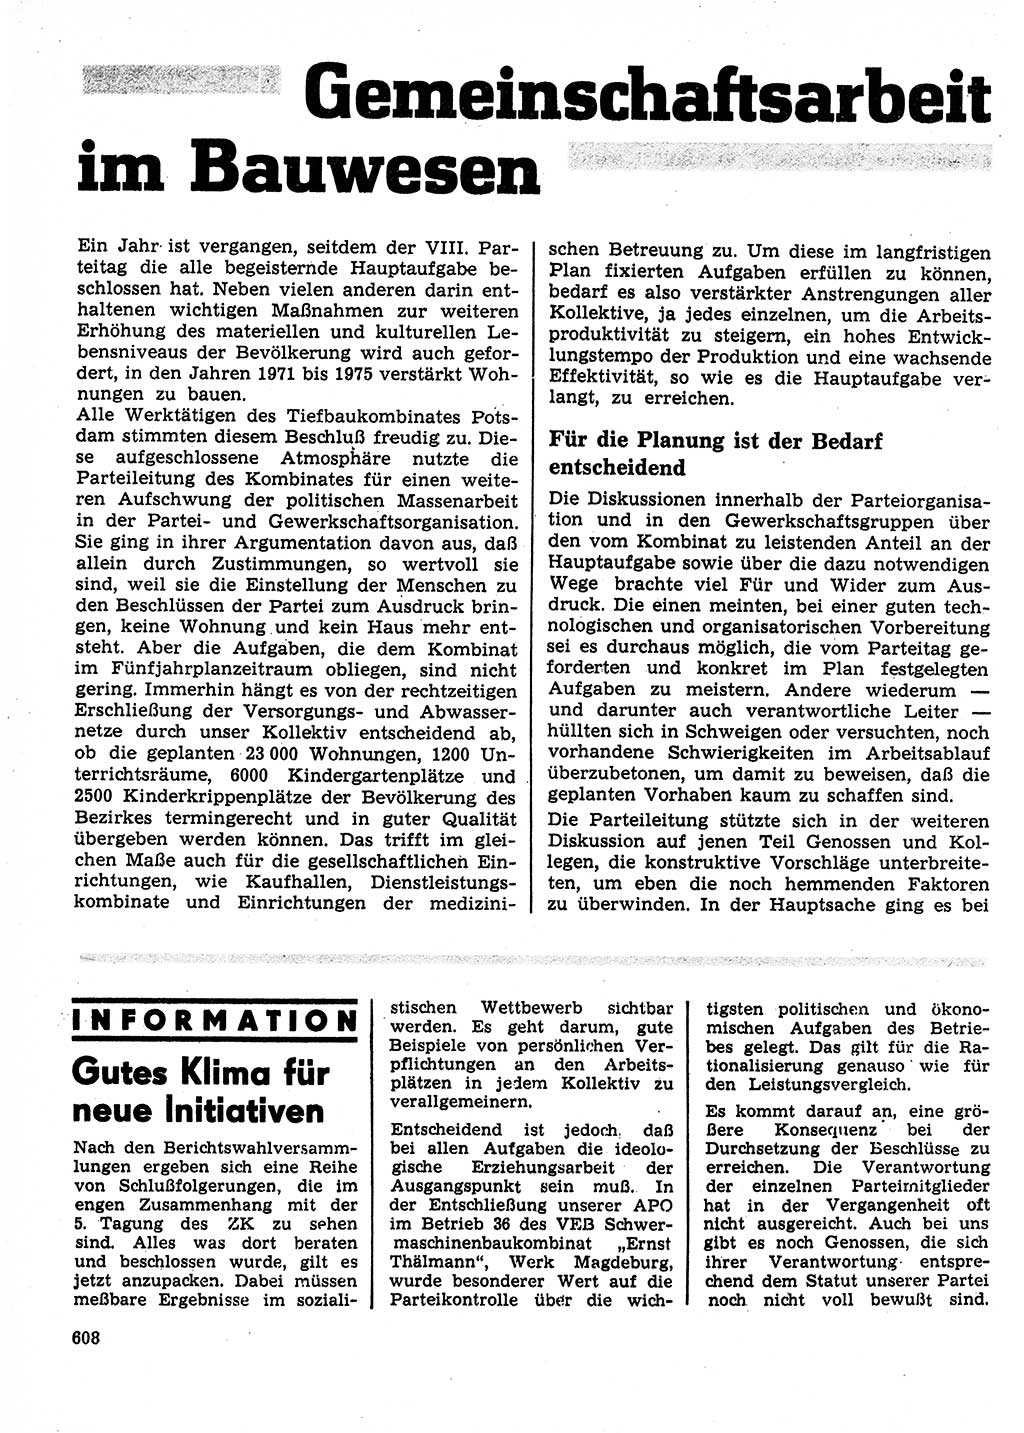 Neuer Weg (NW), Organ des Zentralkomitees (ZK) der SED (Sozialistische Einheitspartei Deutschlands) für Fragen des Parteilebens, 27. Jahrgang [Deutsche Demokratische Republik (DDR)] 1972, Seite 608 (NW ZK SED DDR 1972, S. 608)